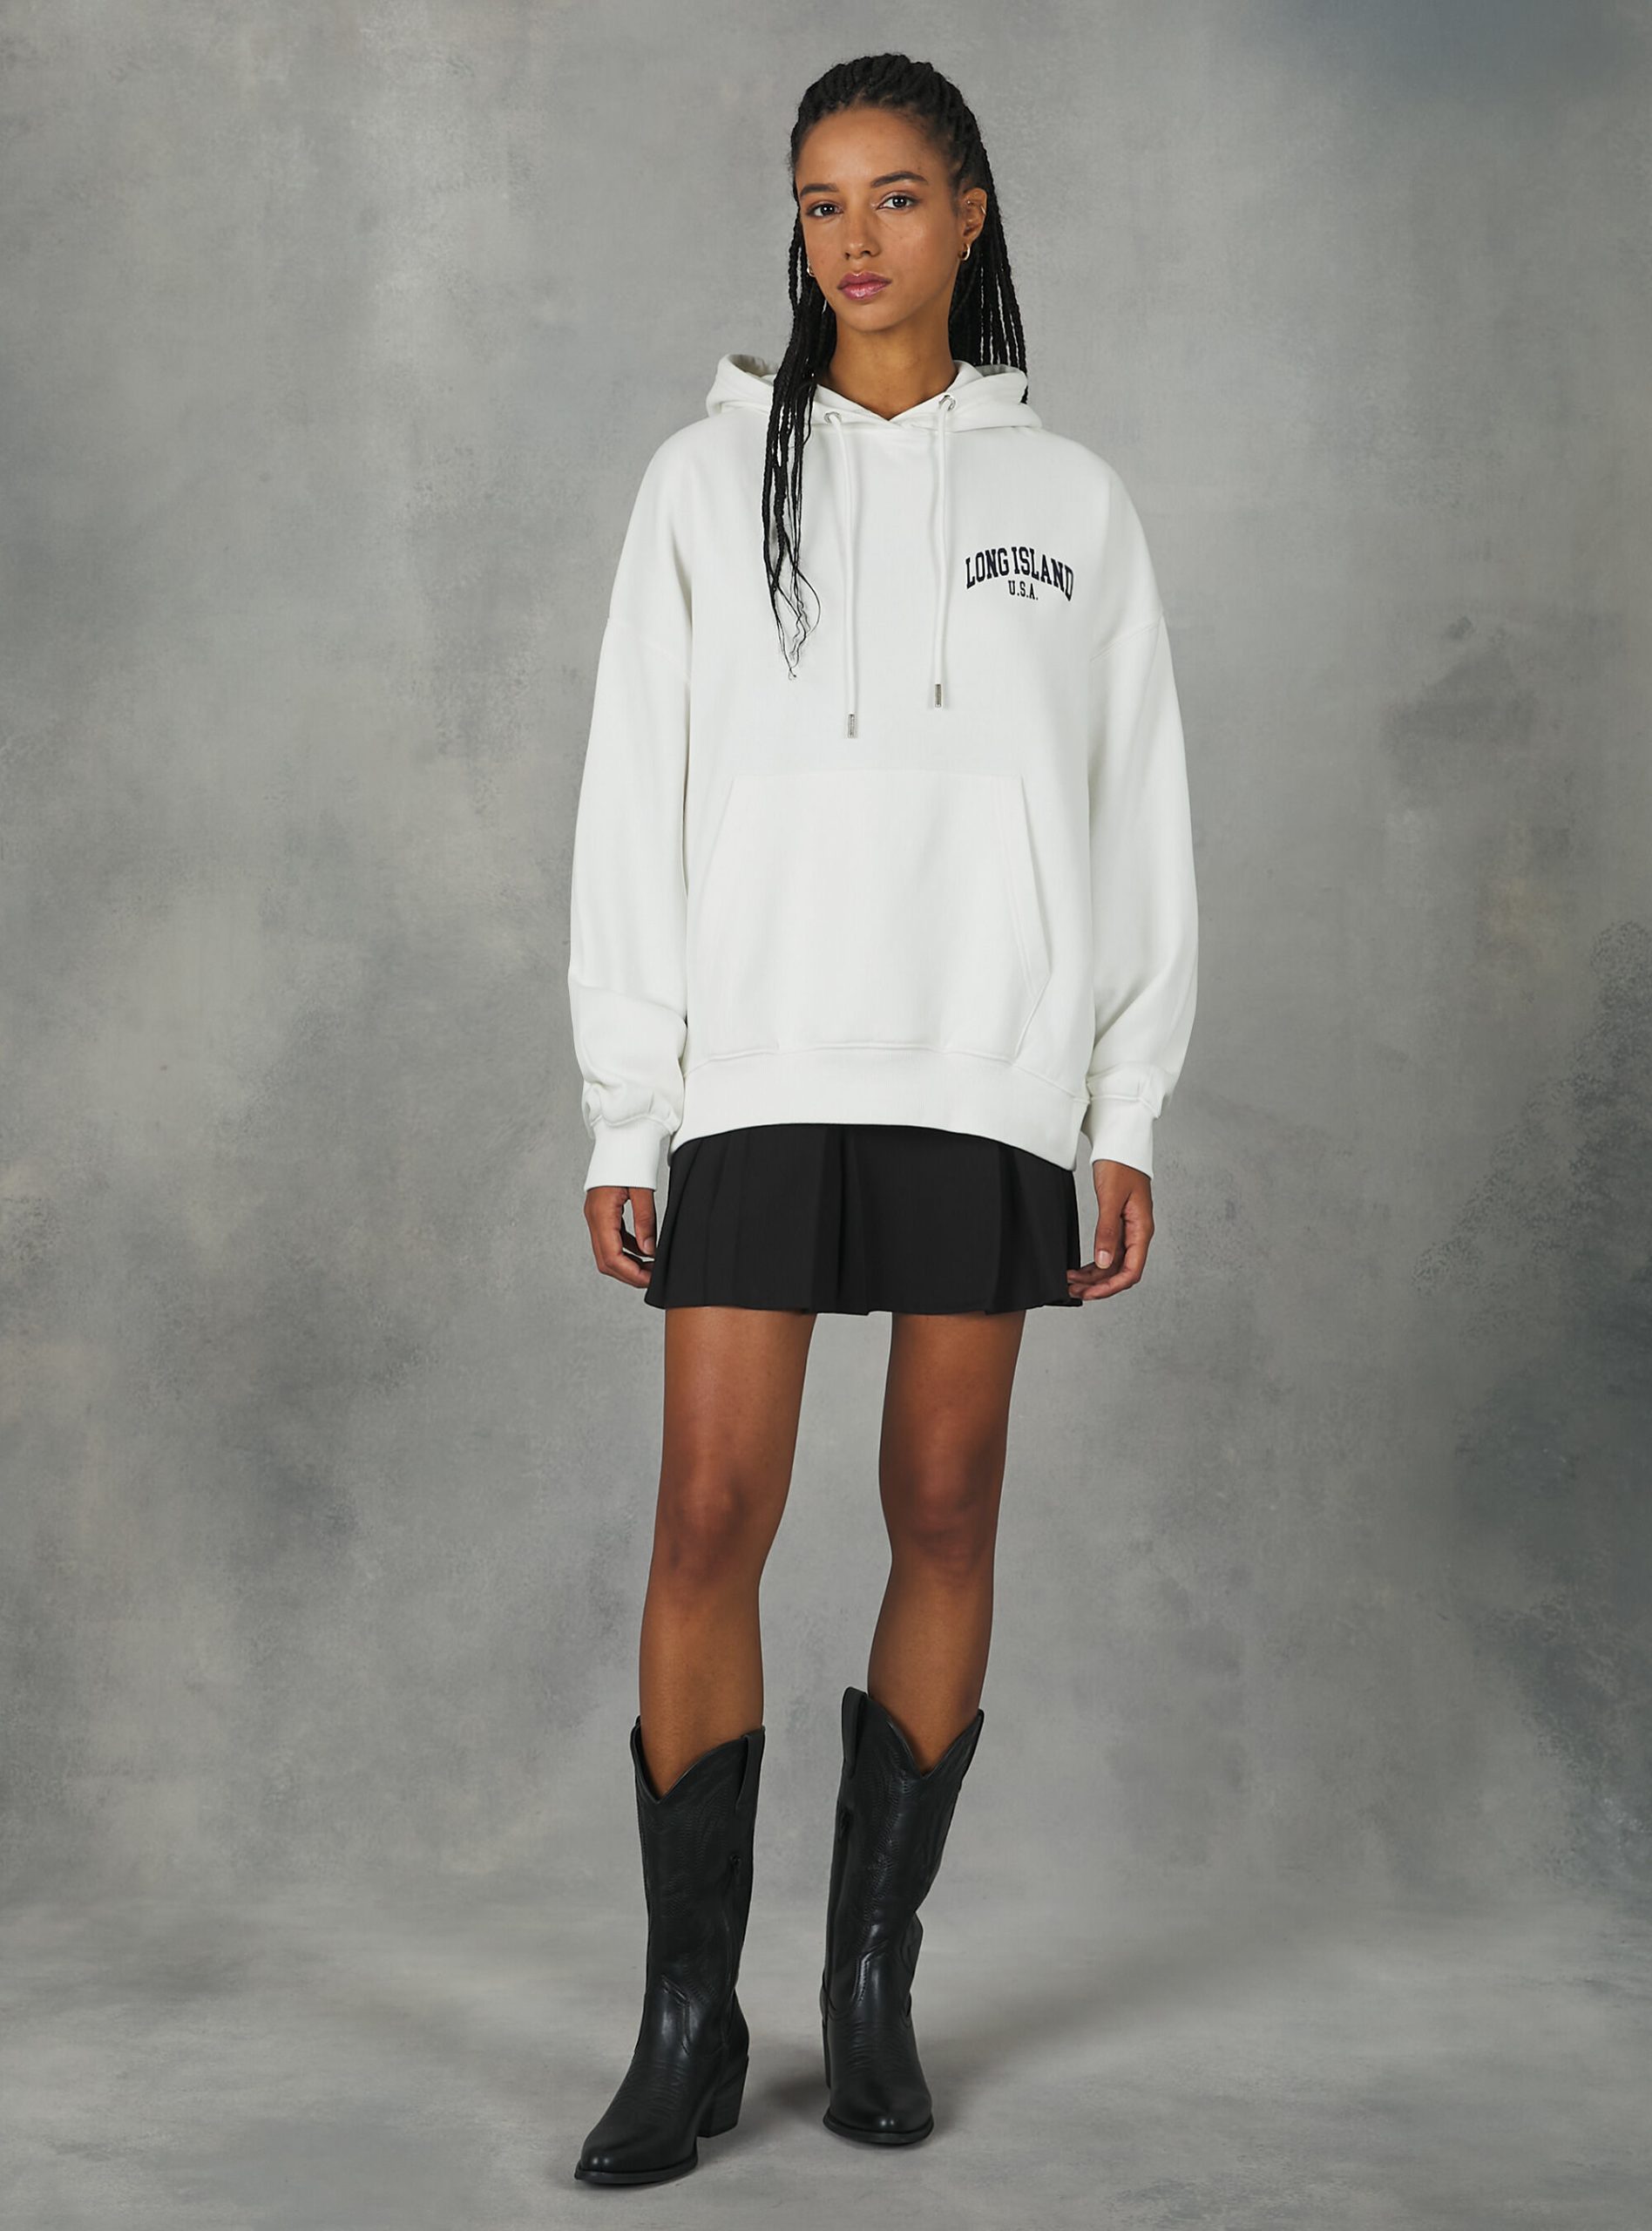 Alcott Sweatshirts Wh2 White Empfehlen Frauen Sweatshirt With College Print And Hood – 2